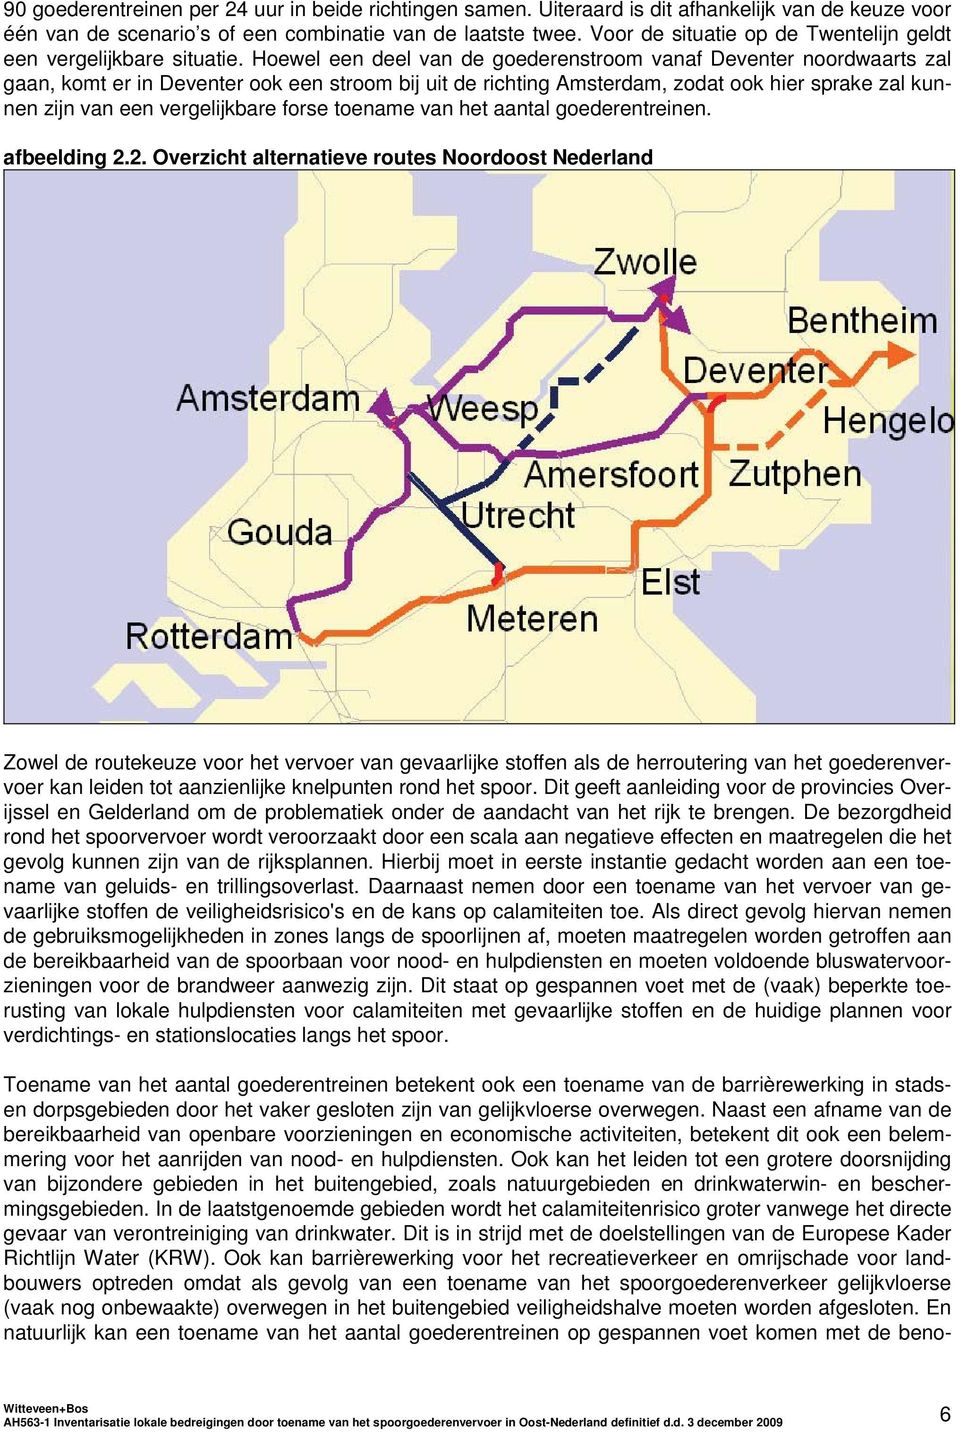 Hoewel een deel van de goederenstroom vanaf Deventer noordwaarts zal gaan, komt er in Deventer ook een stroom bij uit de richting Amsterdam, zodat ook hier sprake zal kunnen zijn van een